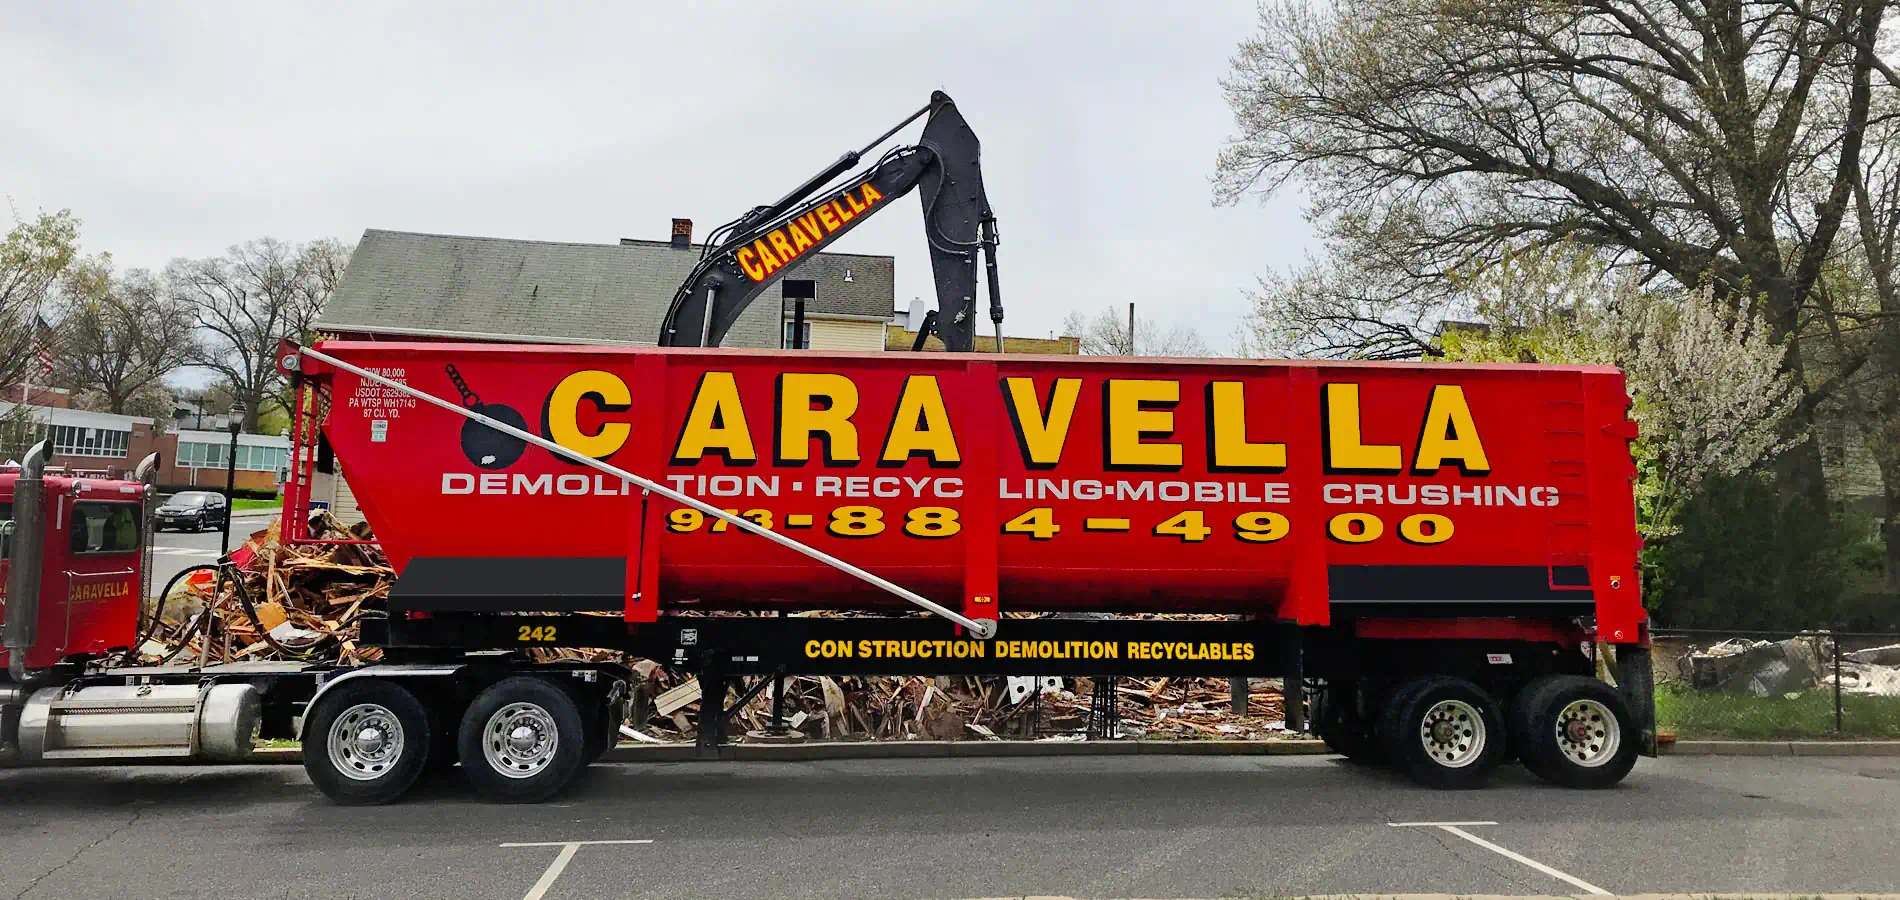 Demolition Services in Hunterdon County, NJ | Caravella Demolition